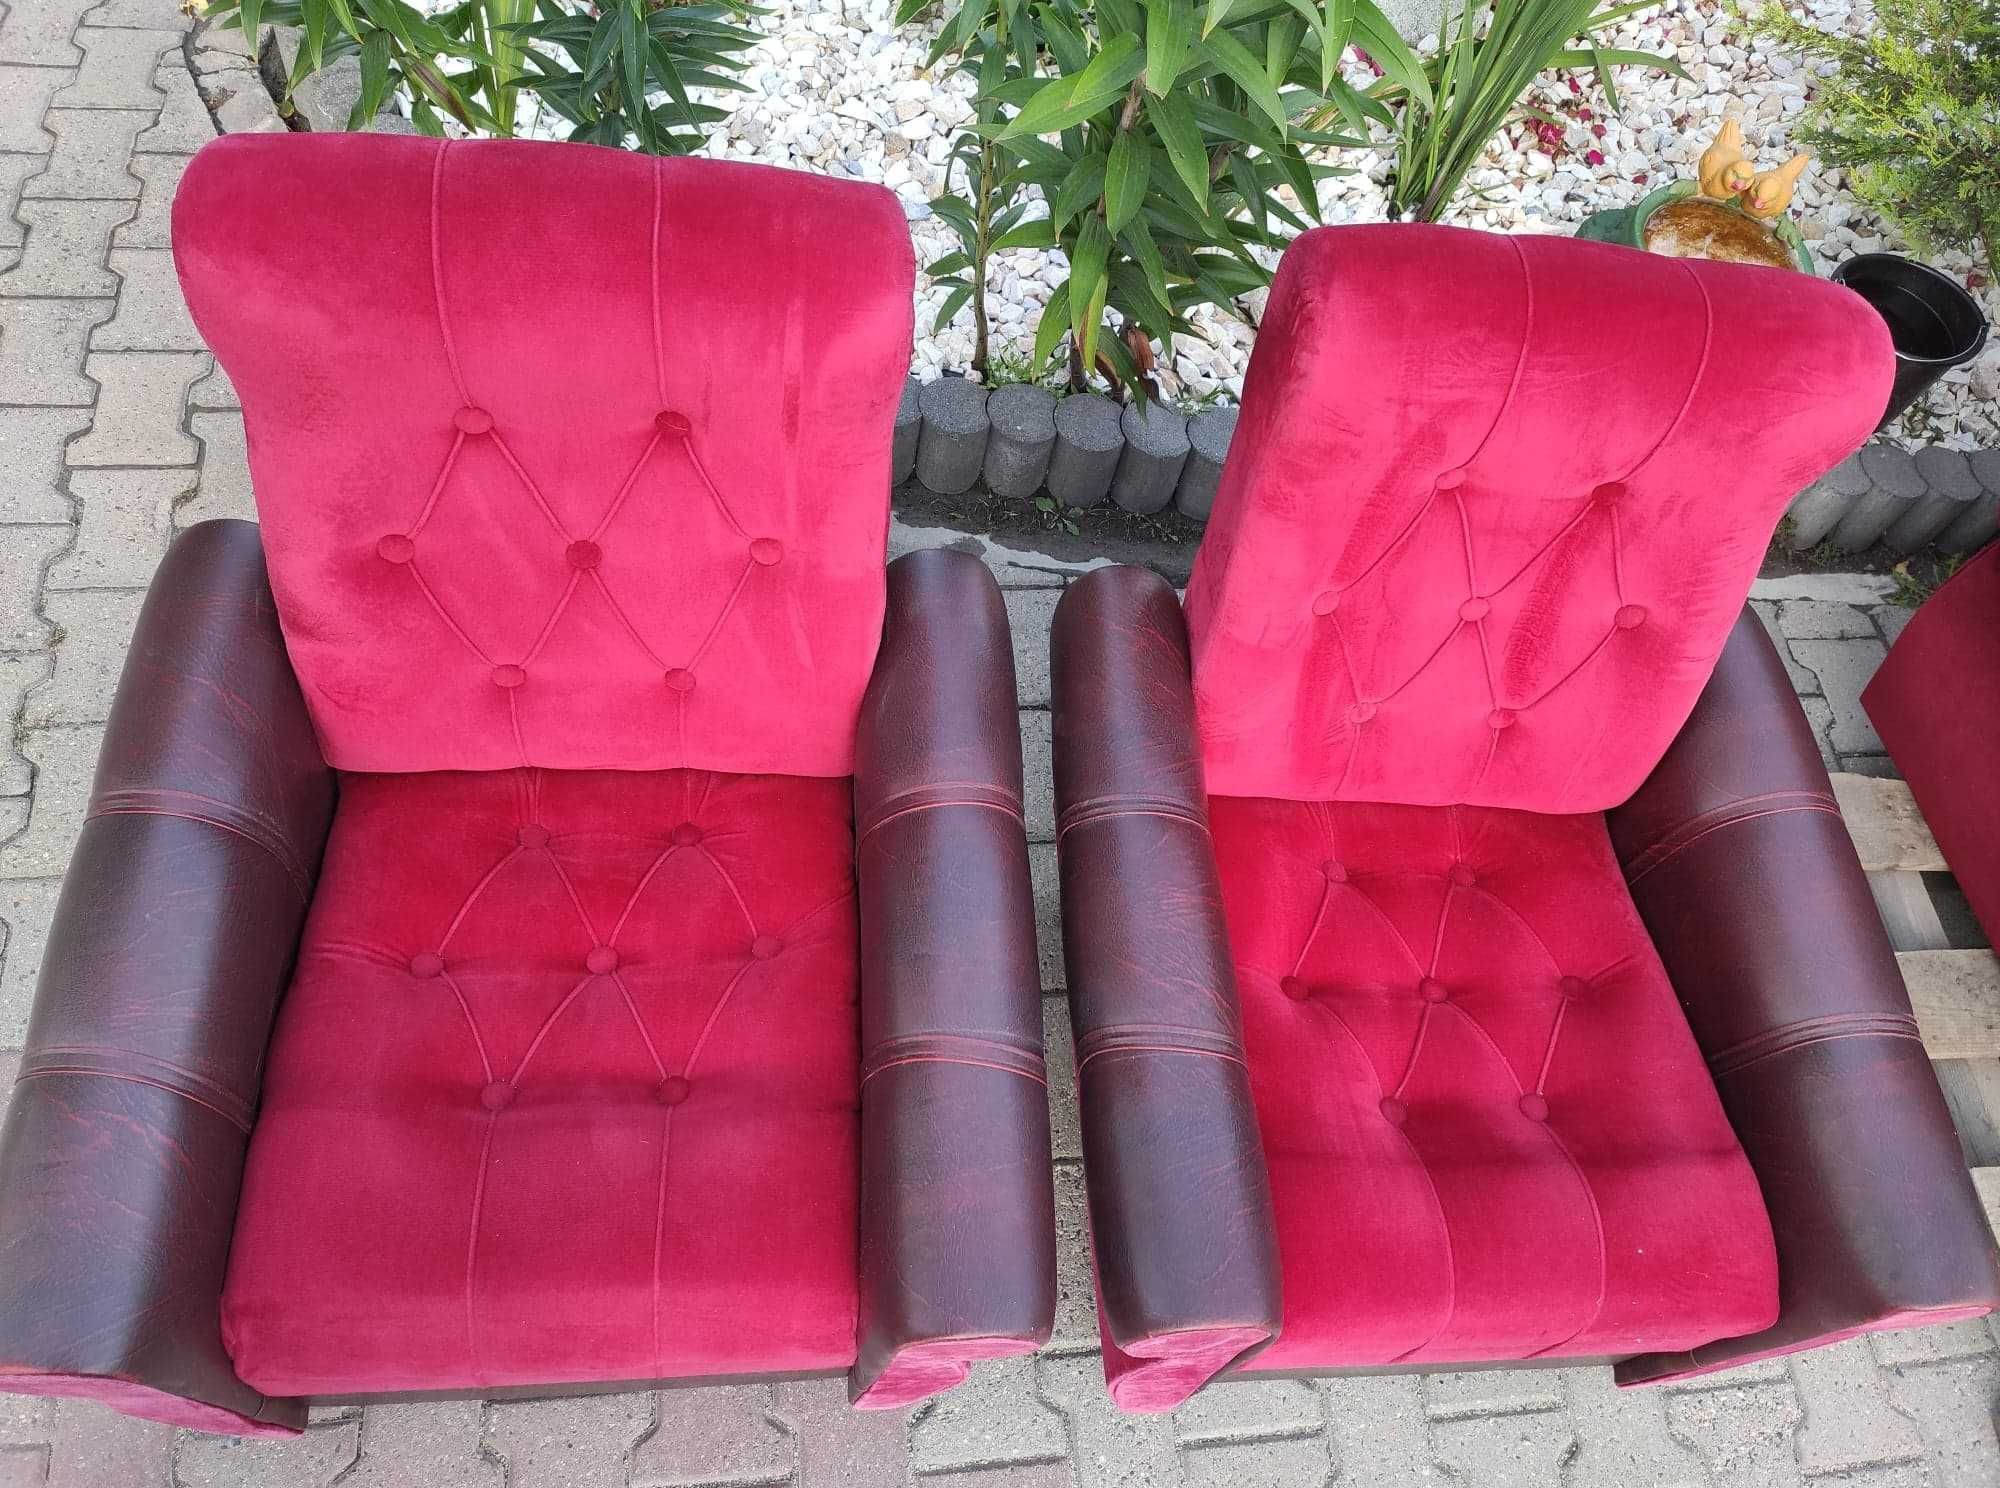 Wersalka sofa kanapa rozkładana i dwa fotele